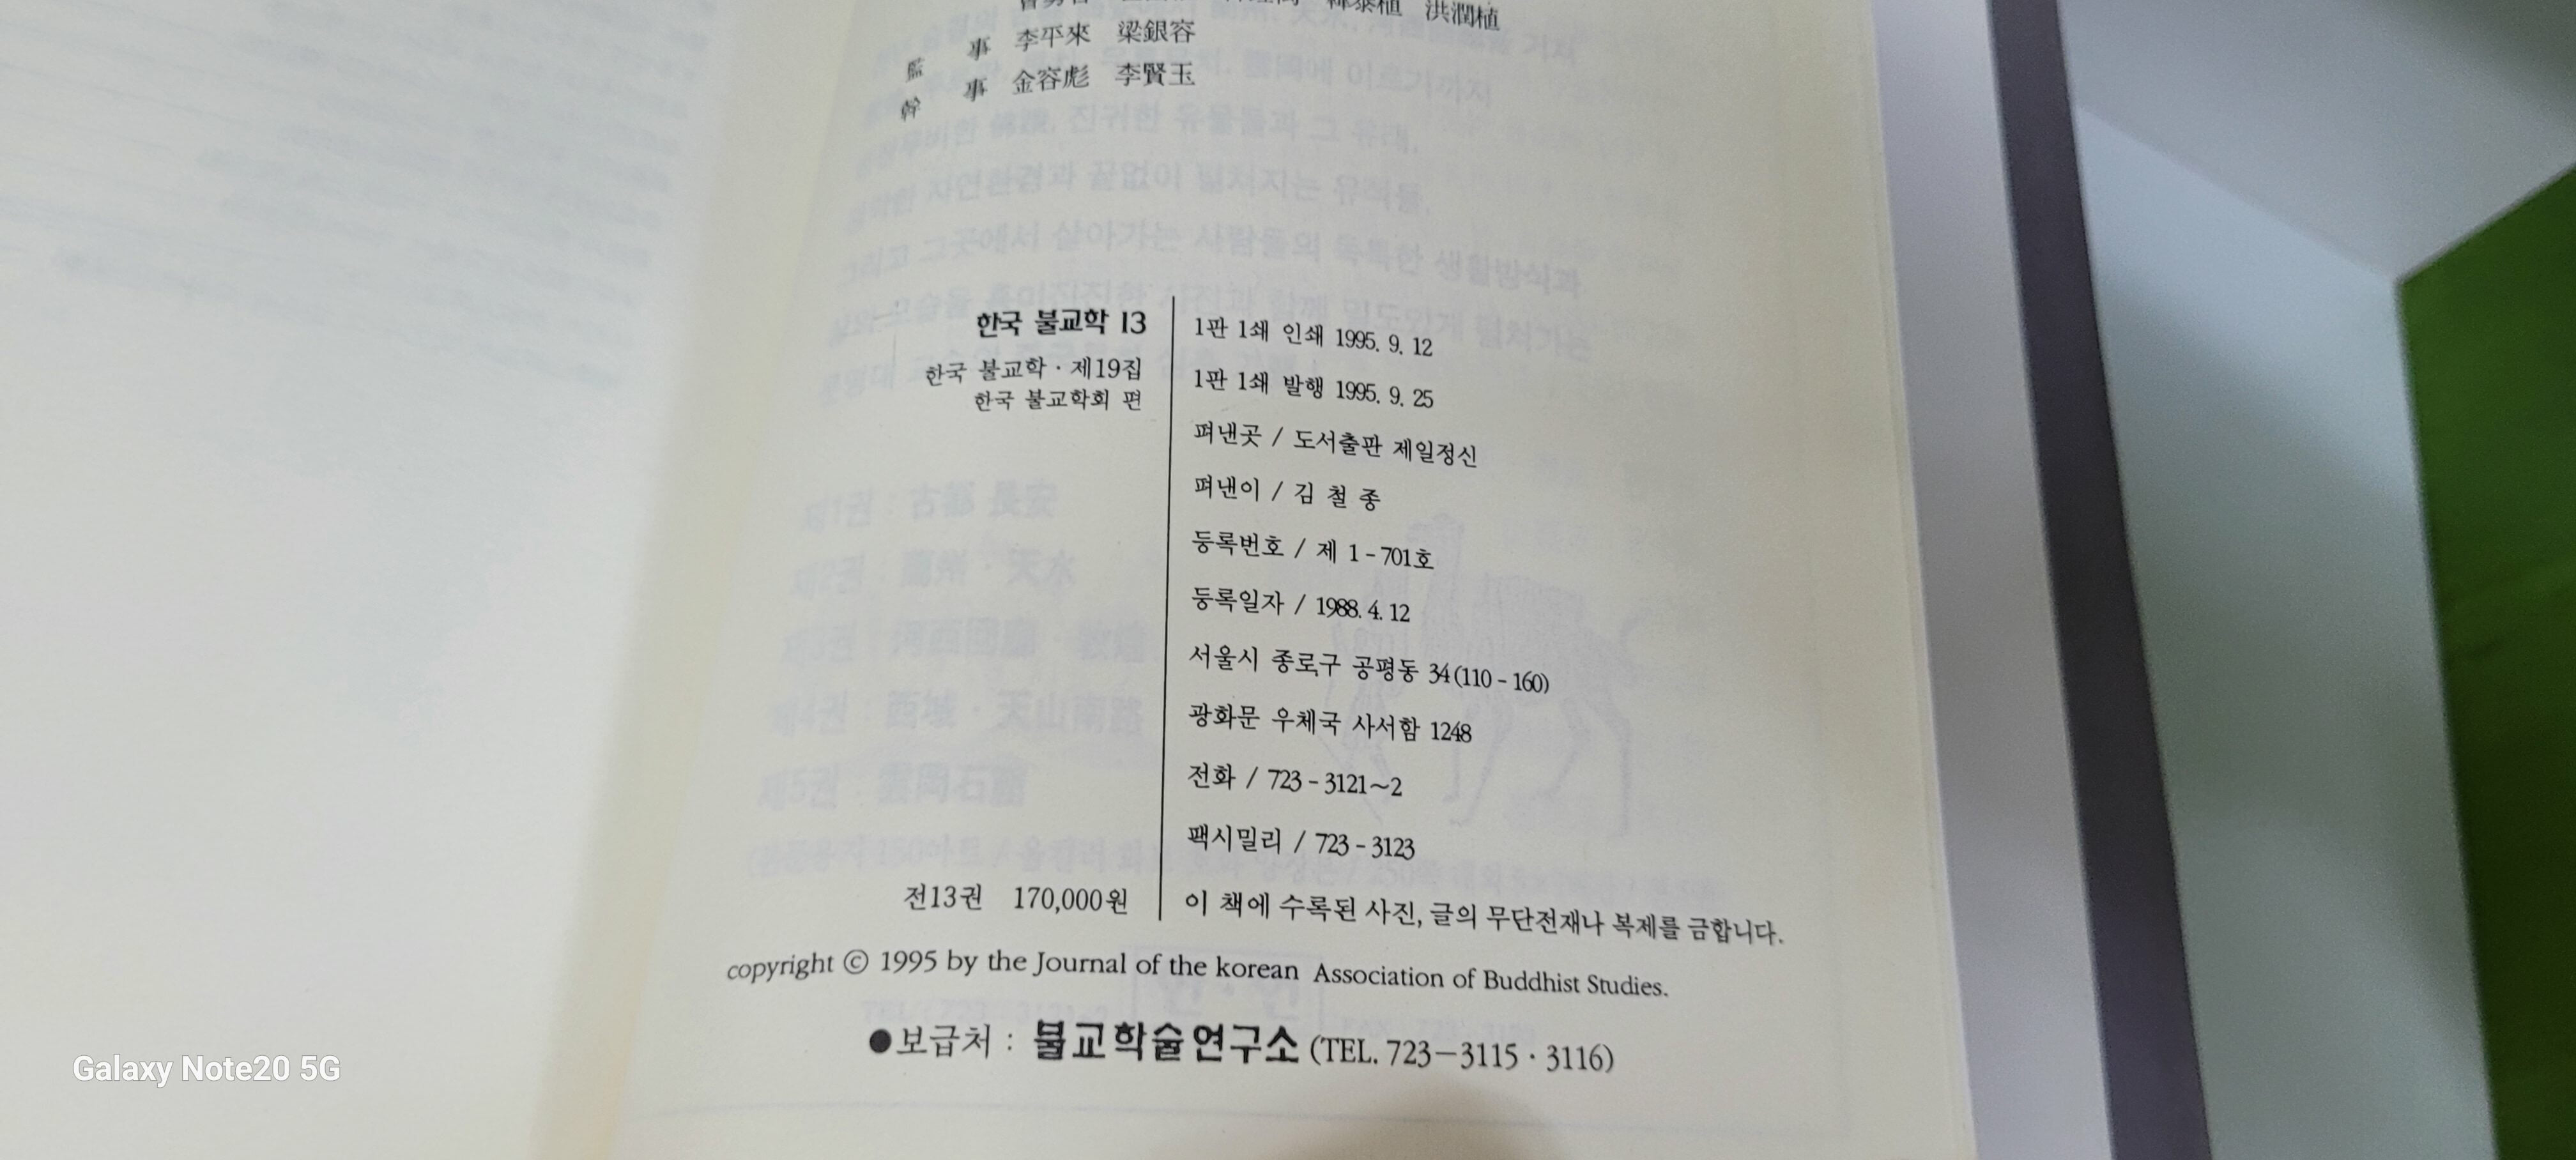 한국 불교학 1-13 전권(실사진첨부/상품설명참조)